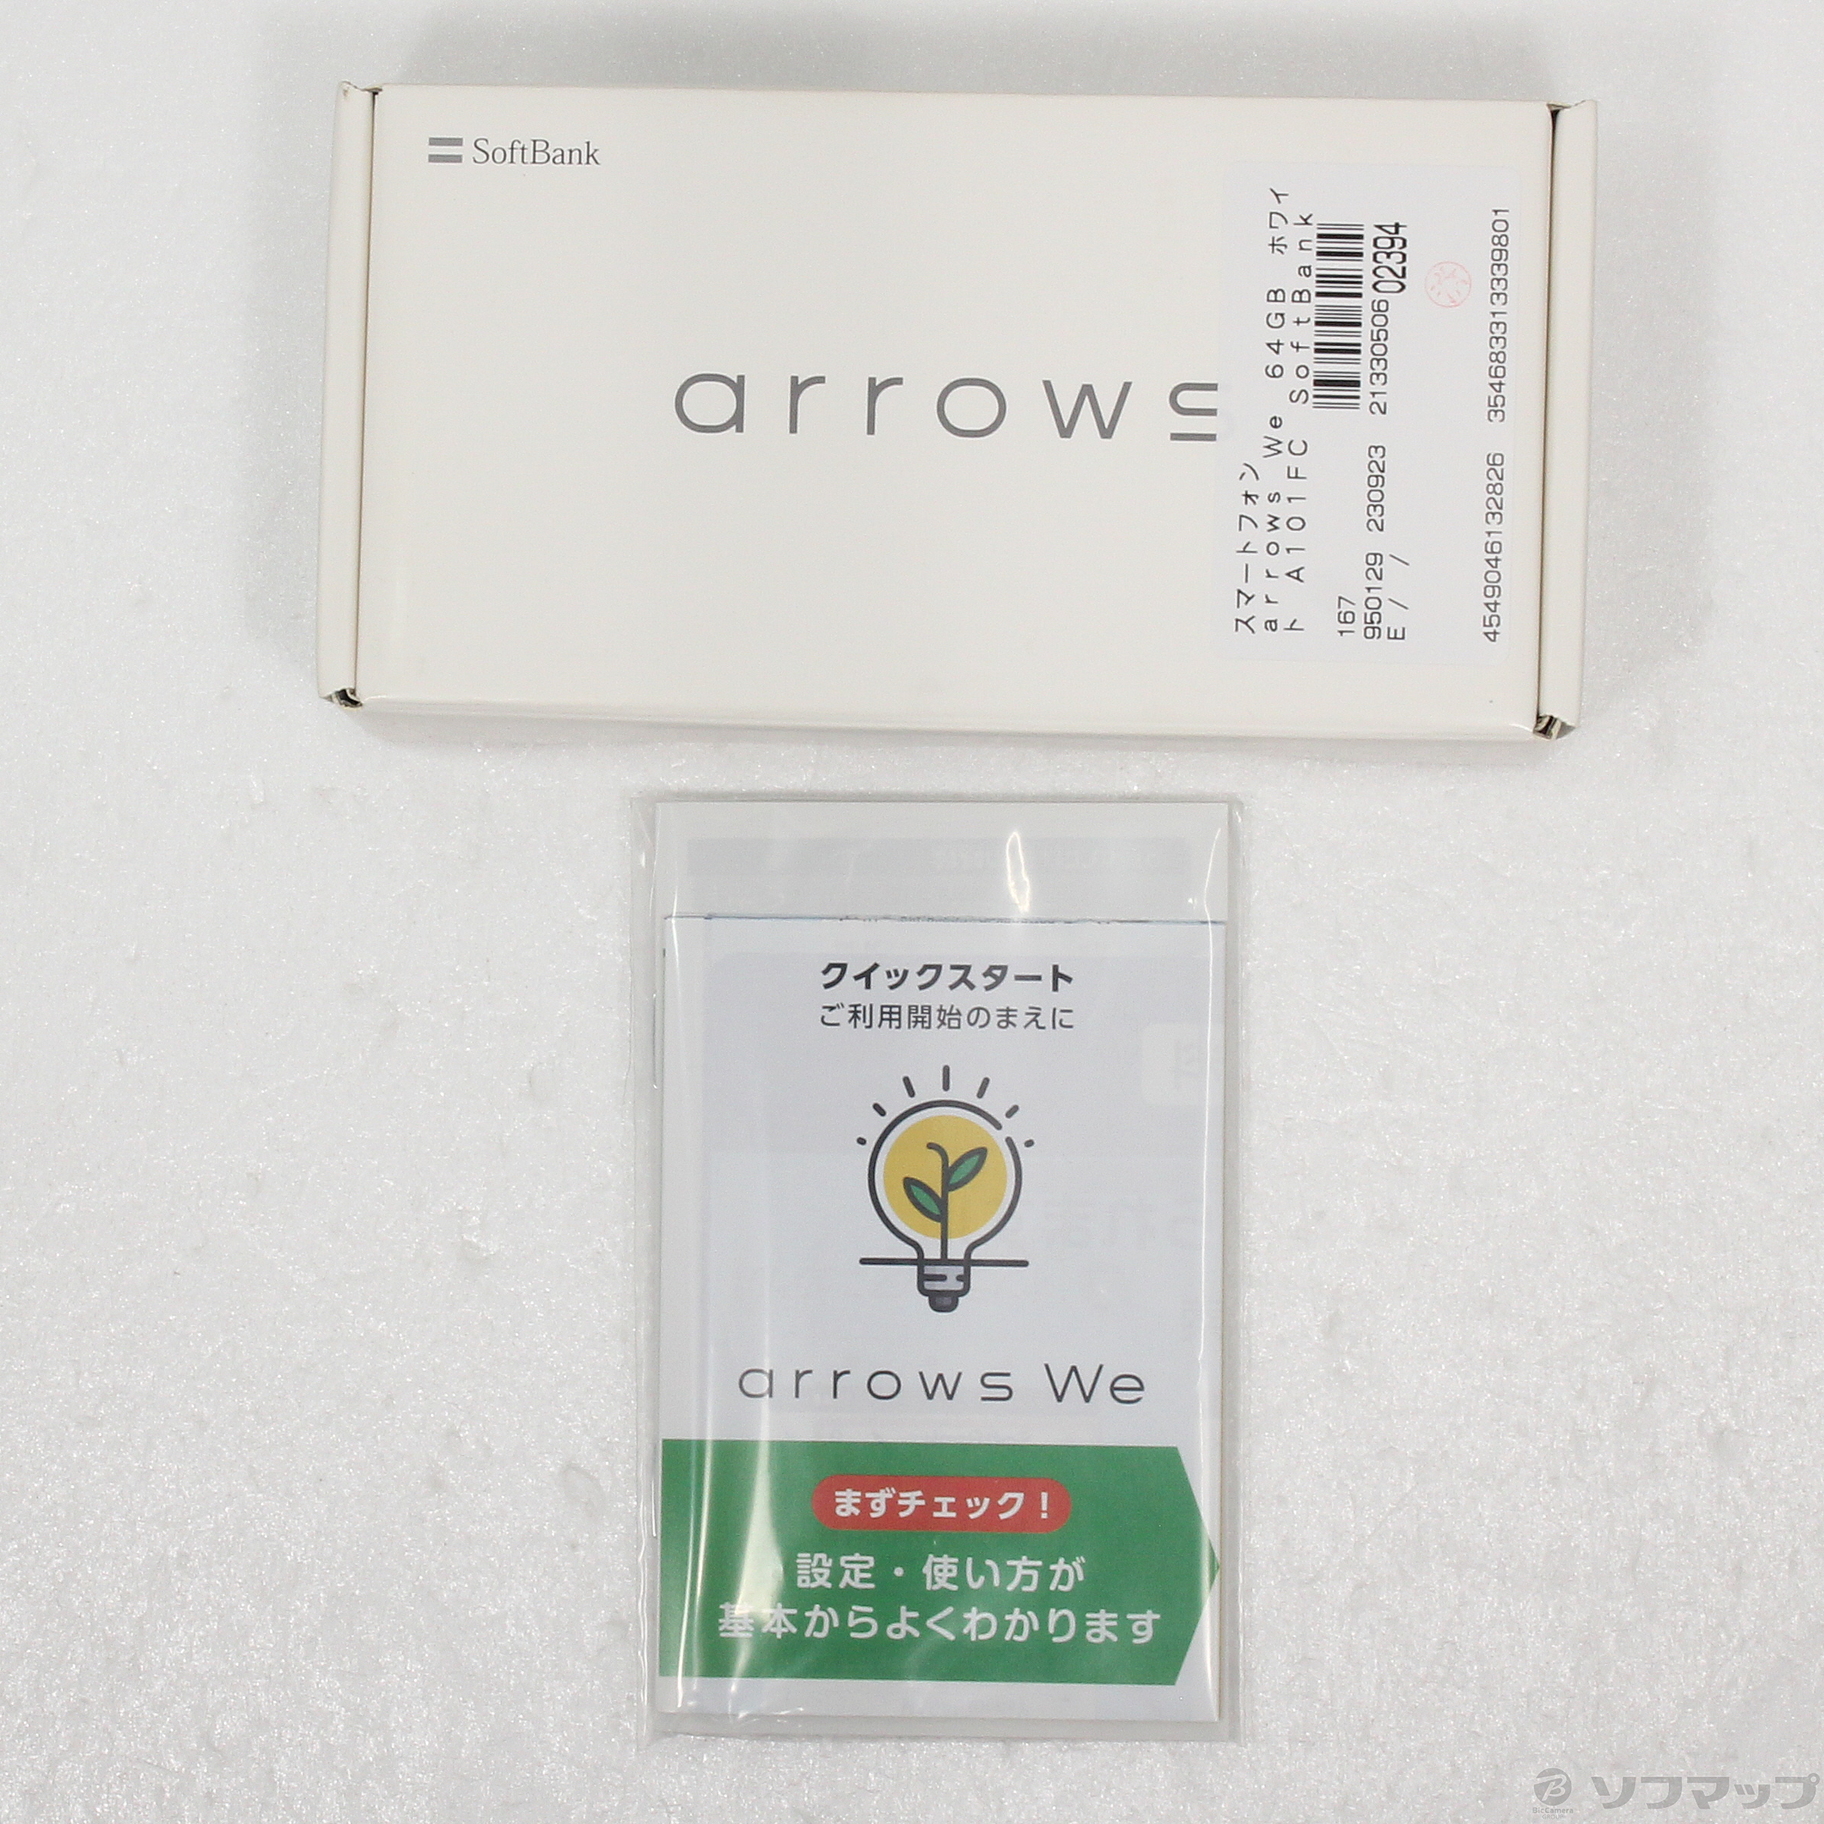 【新品未開封】arrows We ホワイト 64 GB Softbank